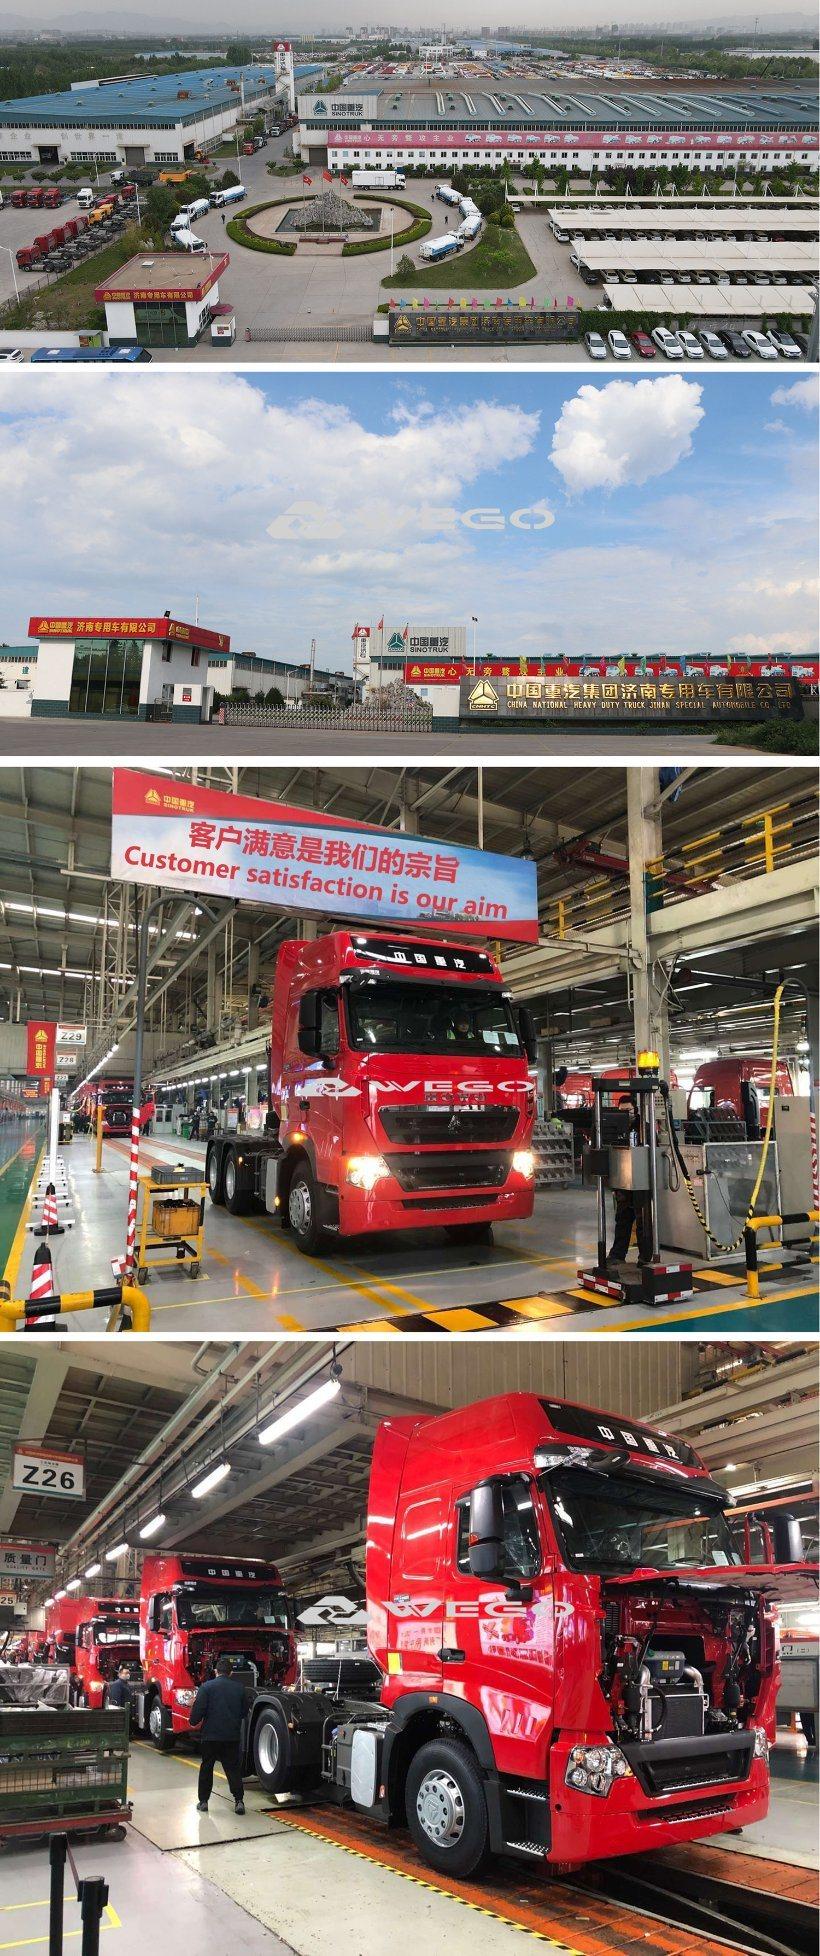 China Sinotruk HOWO Spraying Water Tank Truck Suppliers